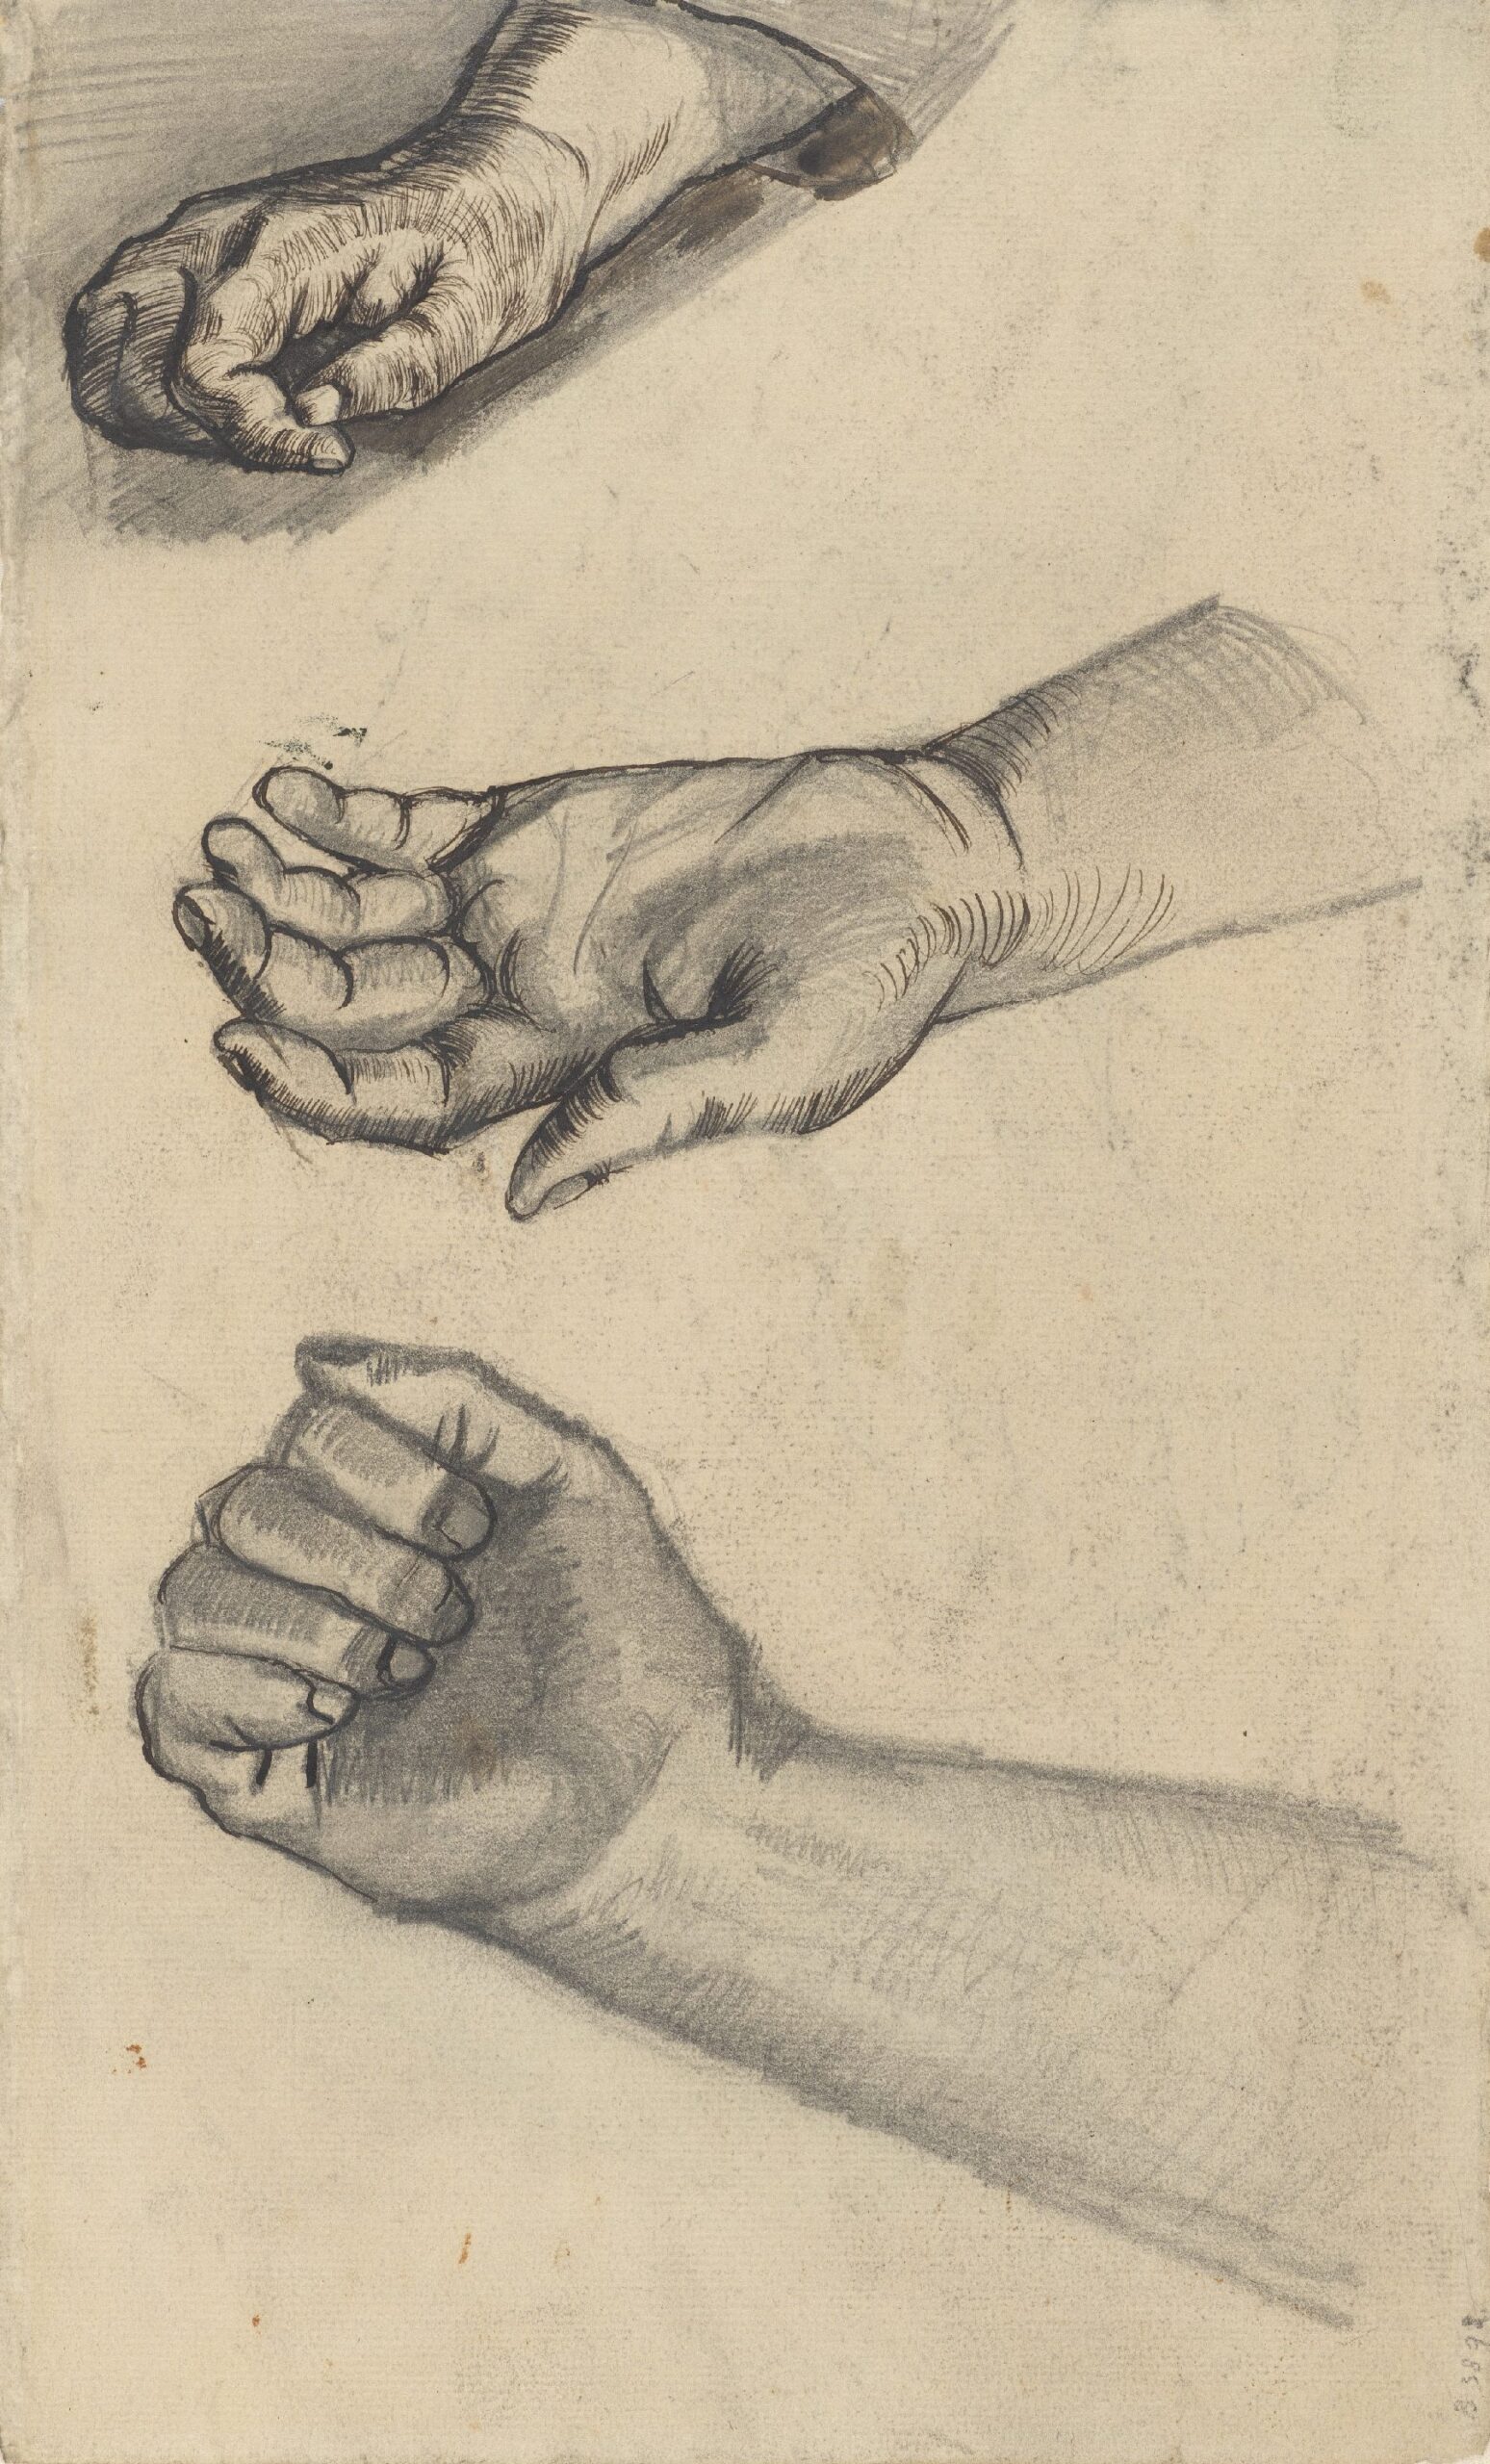 Drie handen Vincent van Gogh (1853 - 1890), Nuenen, december 1884-mei 1885